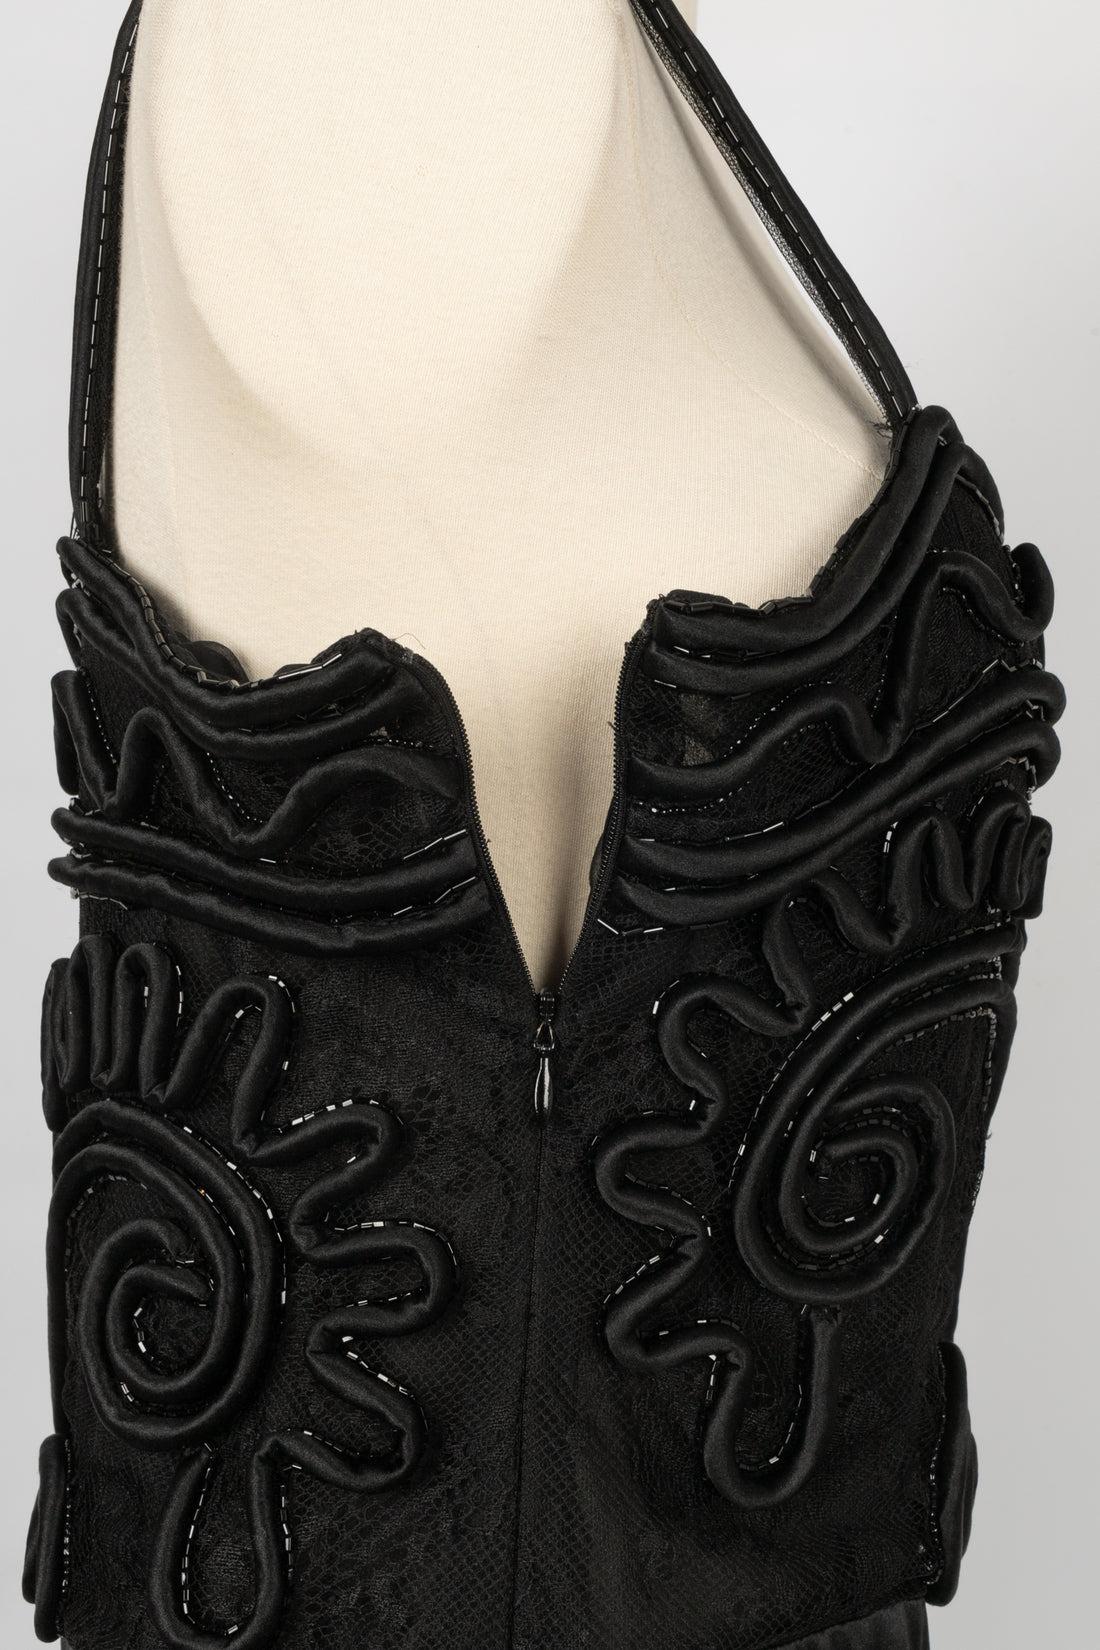 Valentino Black Lace Dress, circa 2010 For Sale 2